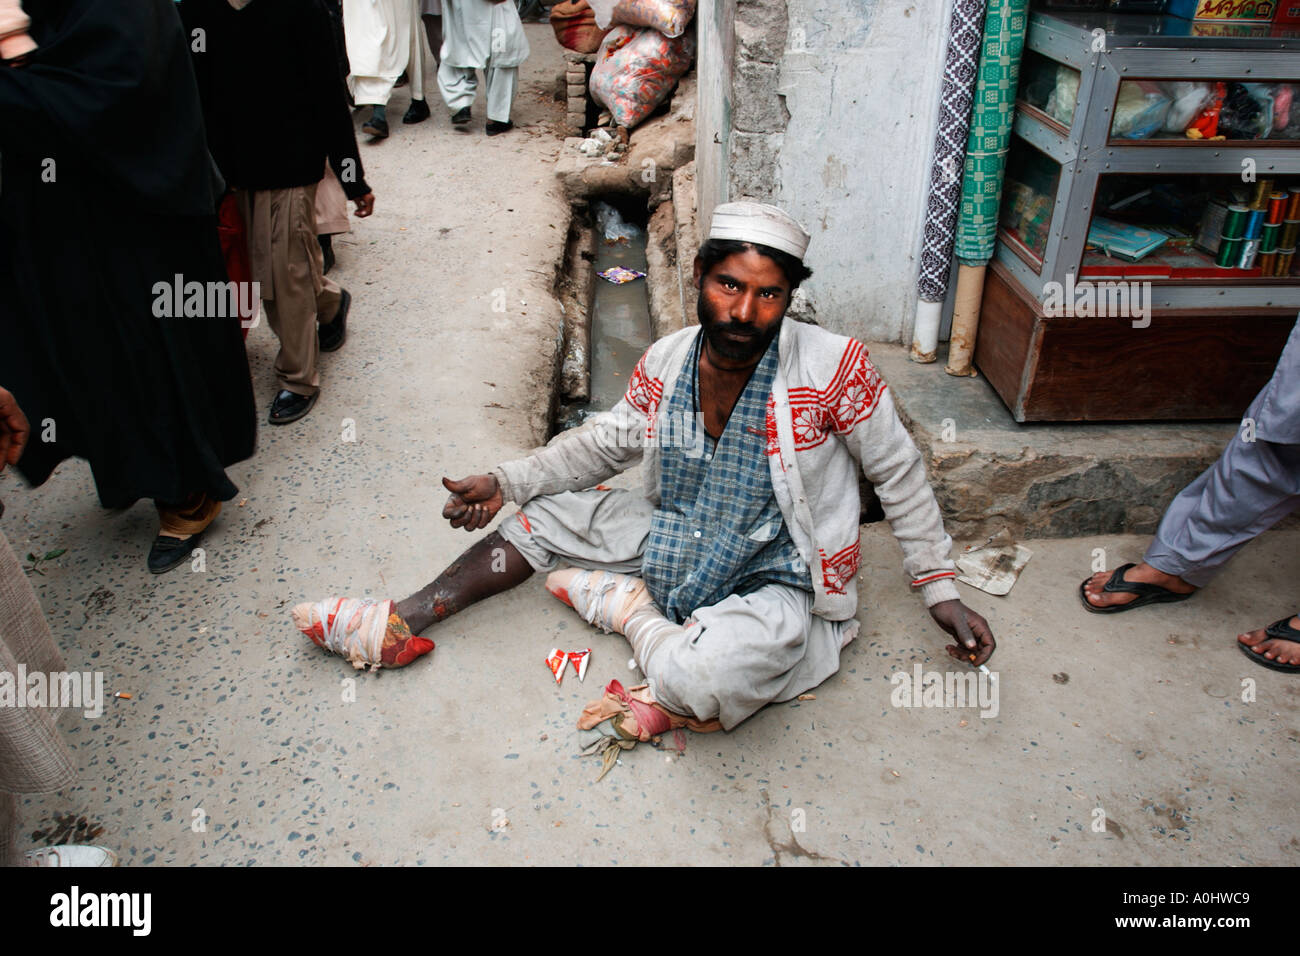 Bettler auf den engen Straßen von Hassan Abdal Markt Pakistan Stockfoto